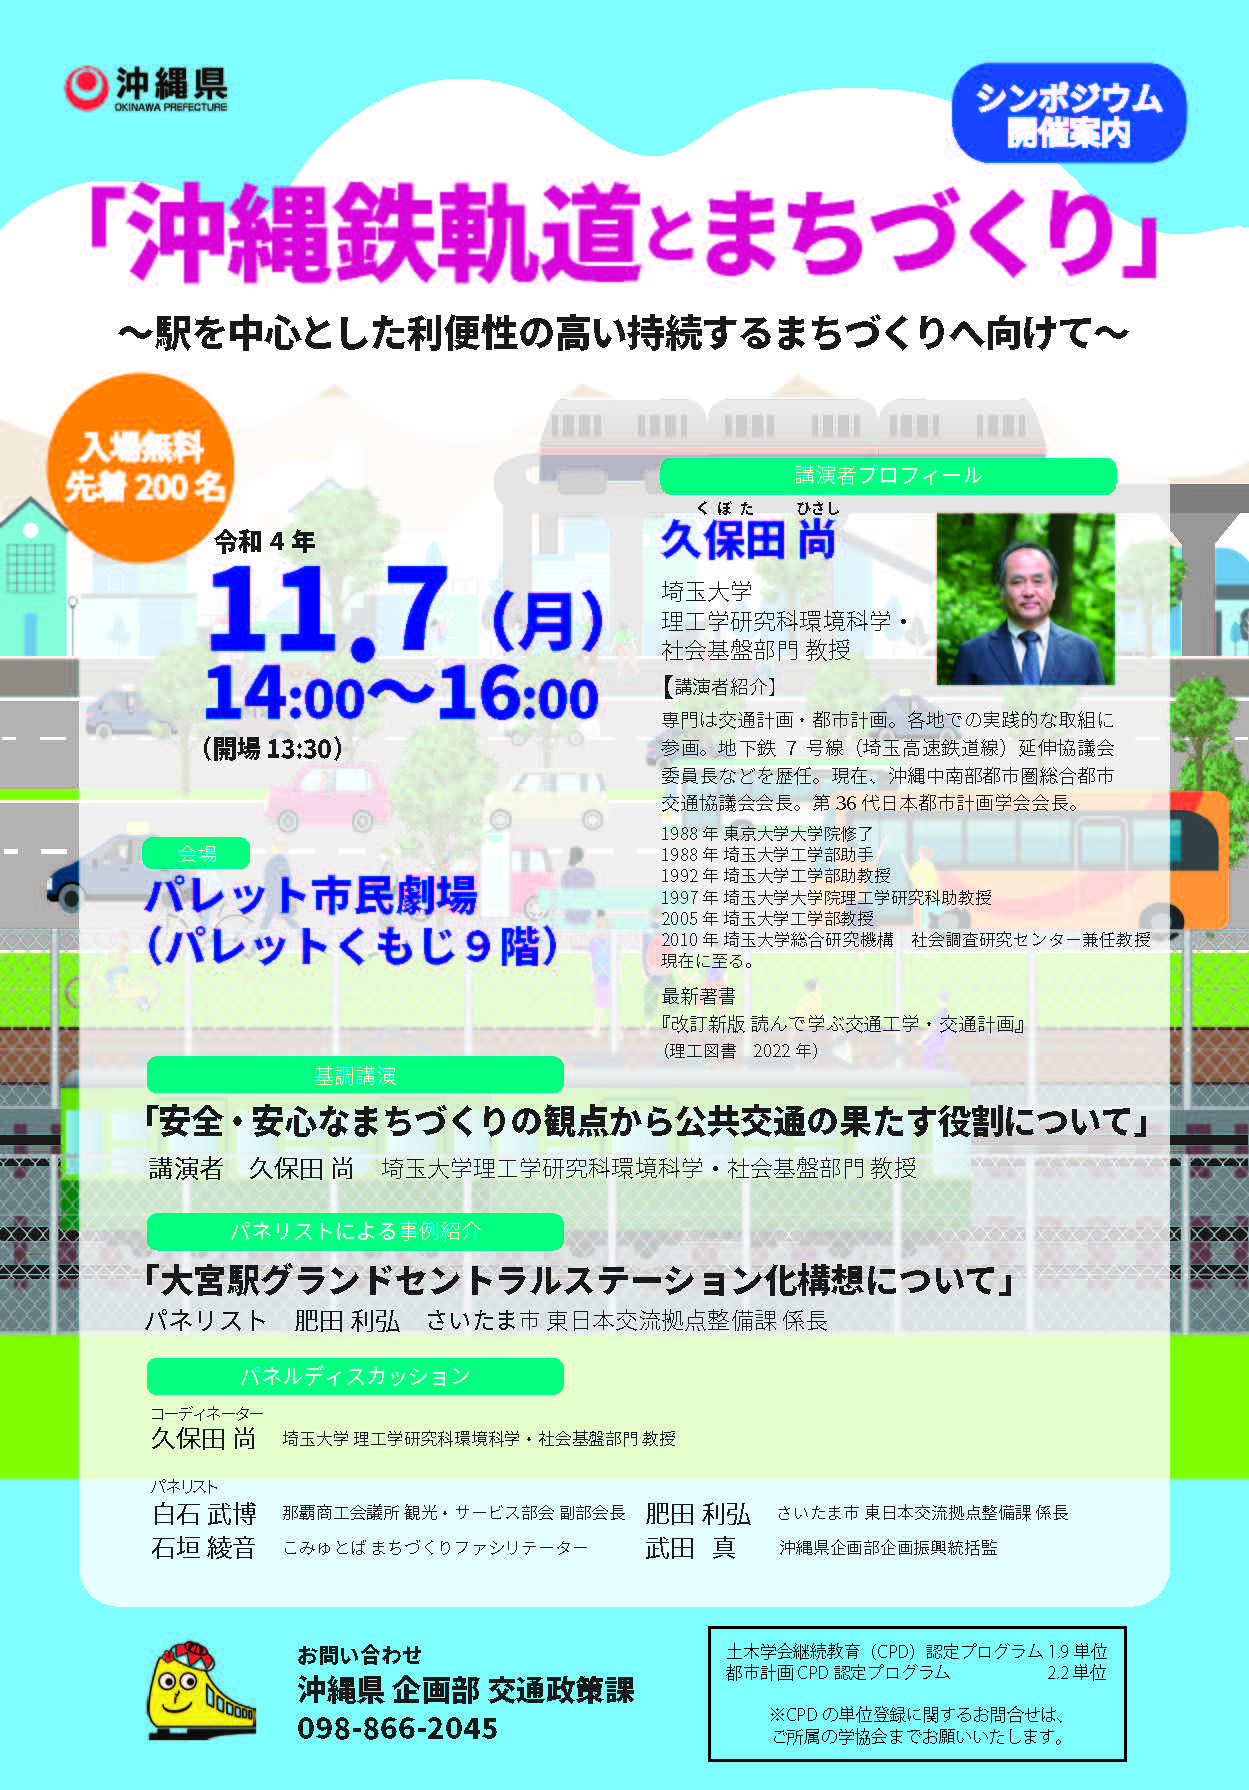 11月7日開催「沖縄鉄軌道とまちづくり」シンポジウム開催のお知らせ